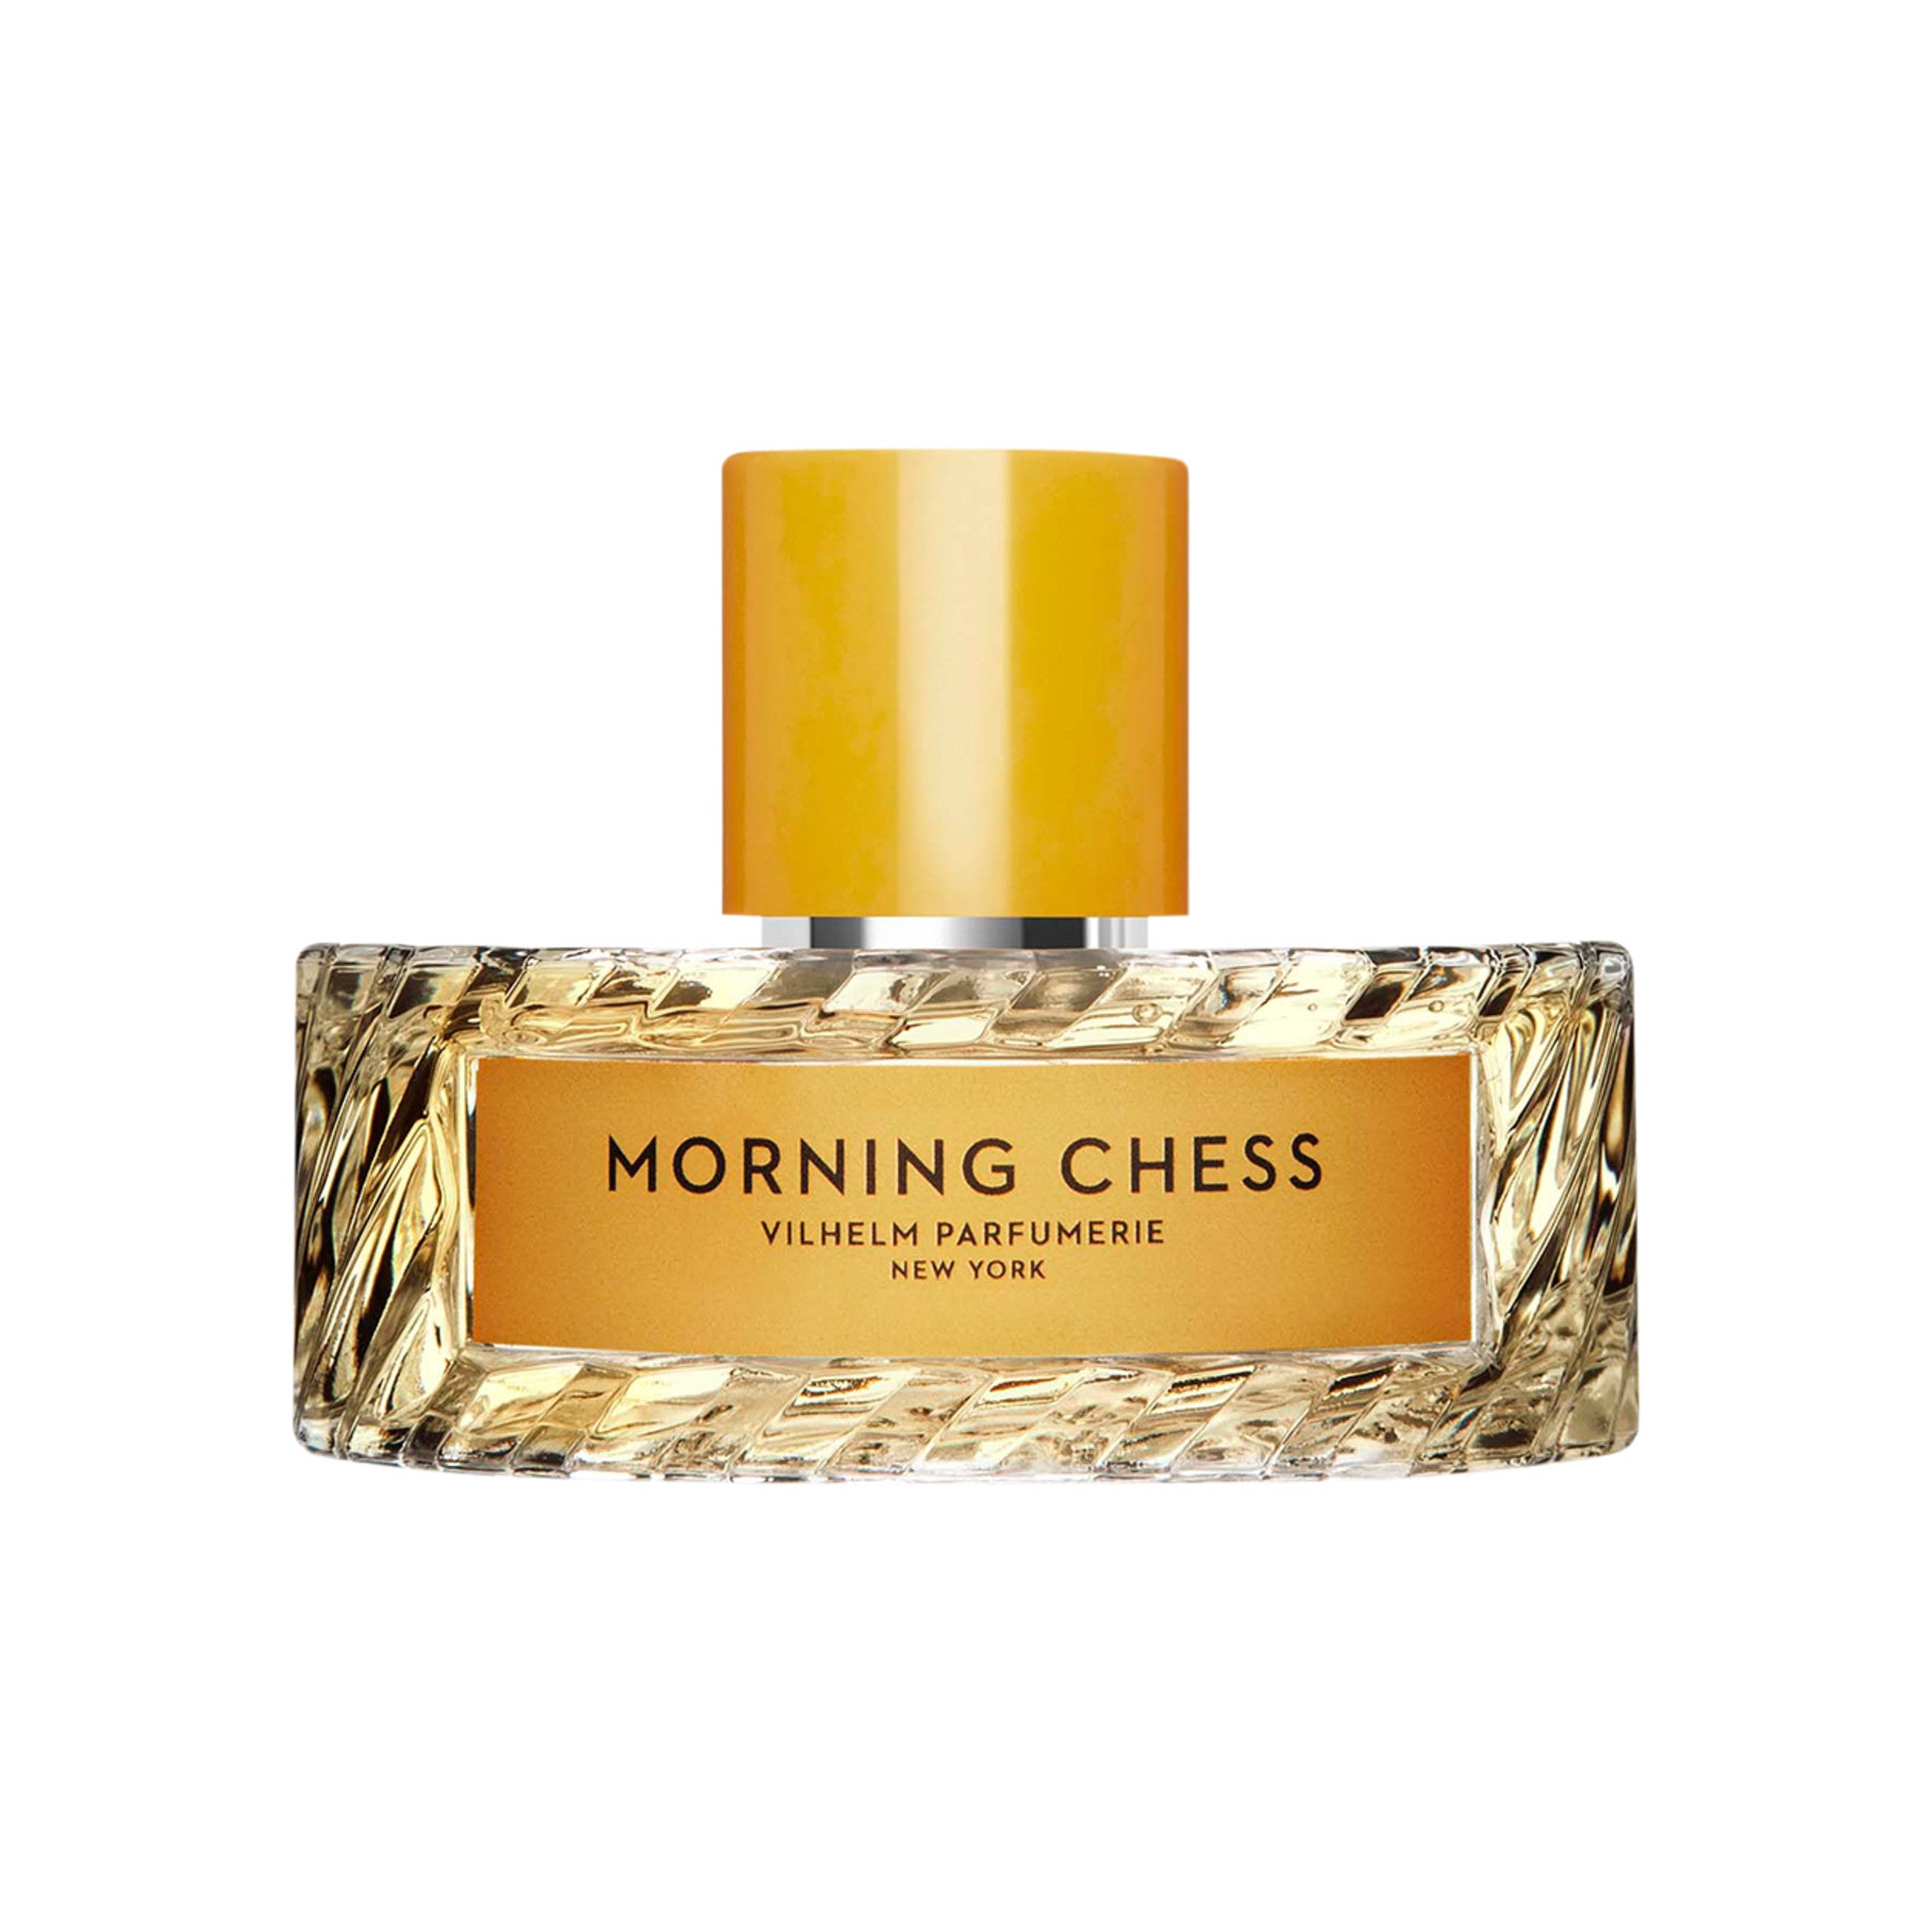 Vilhelm Parfumerie Morning Chess Eau de Parfum Size variant: 100 ml main image.